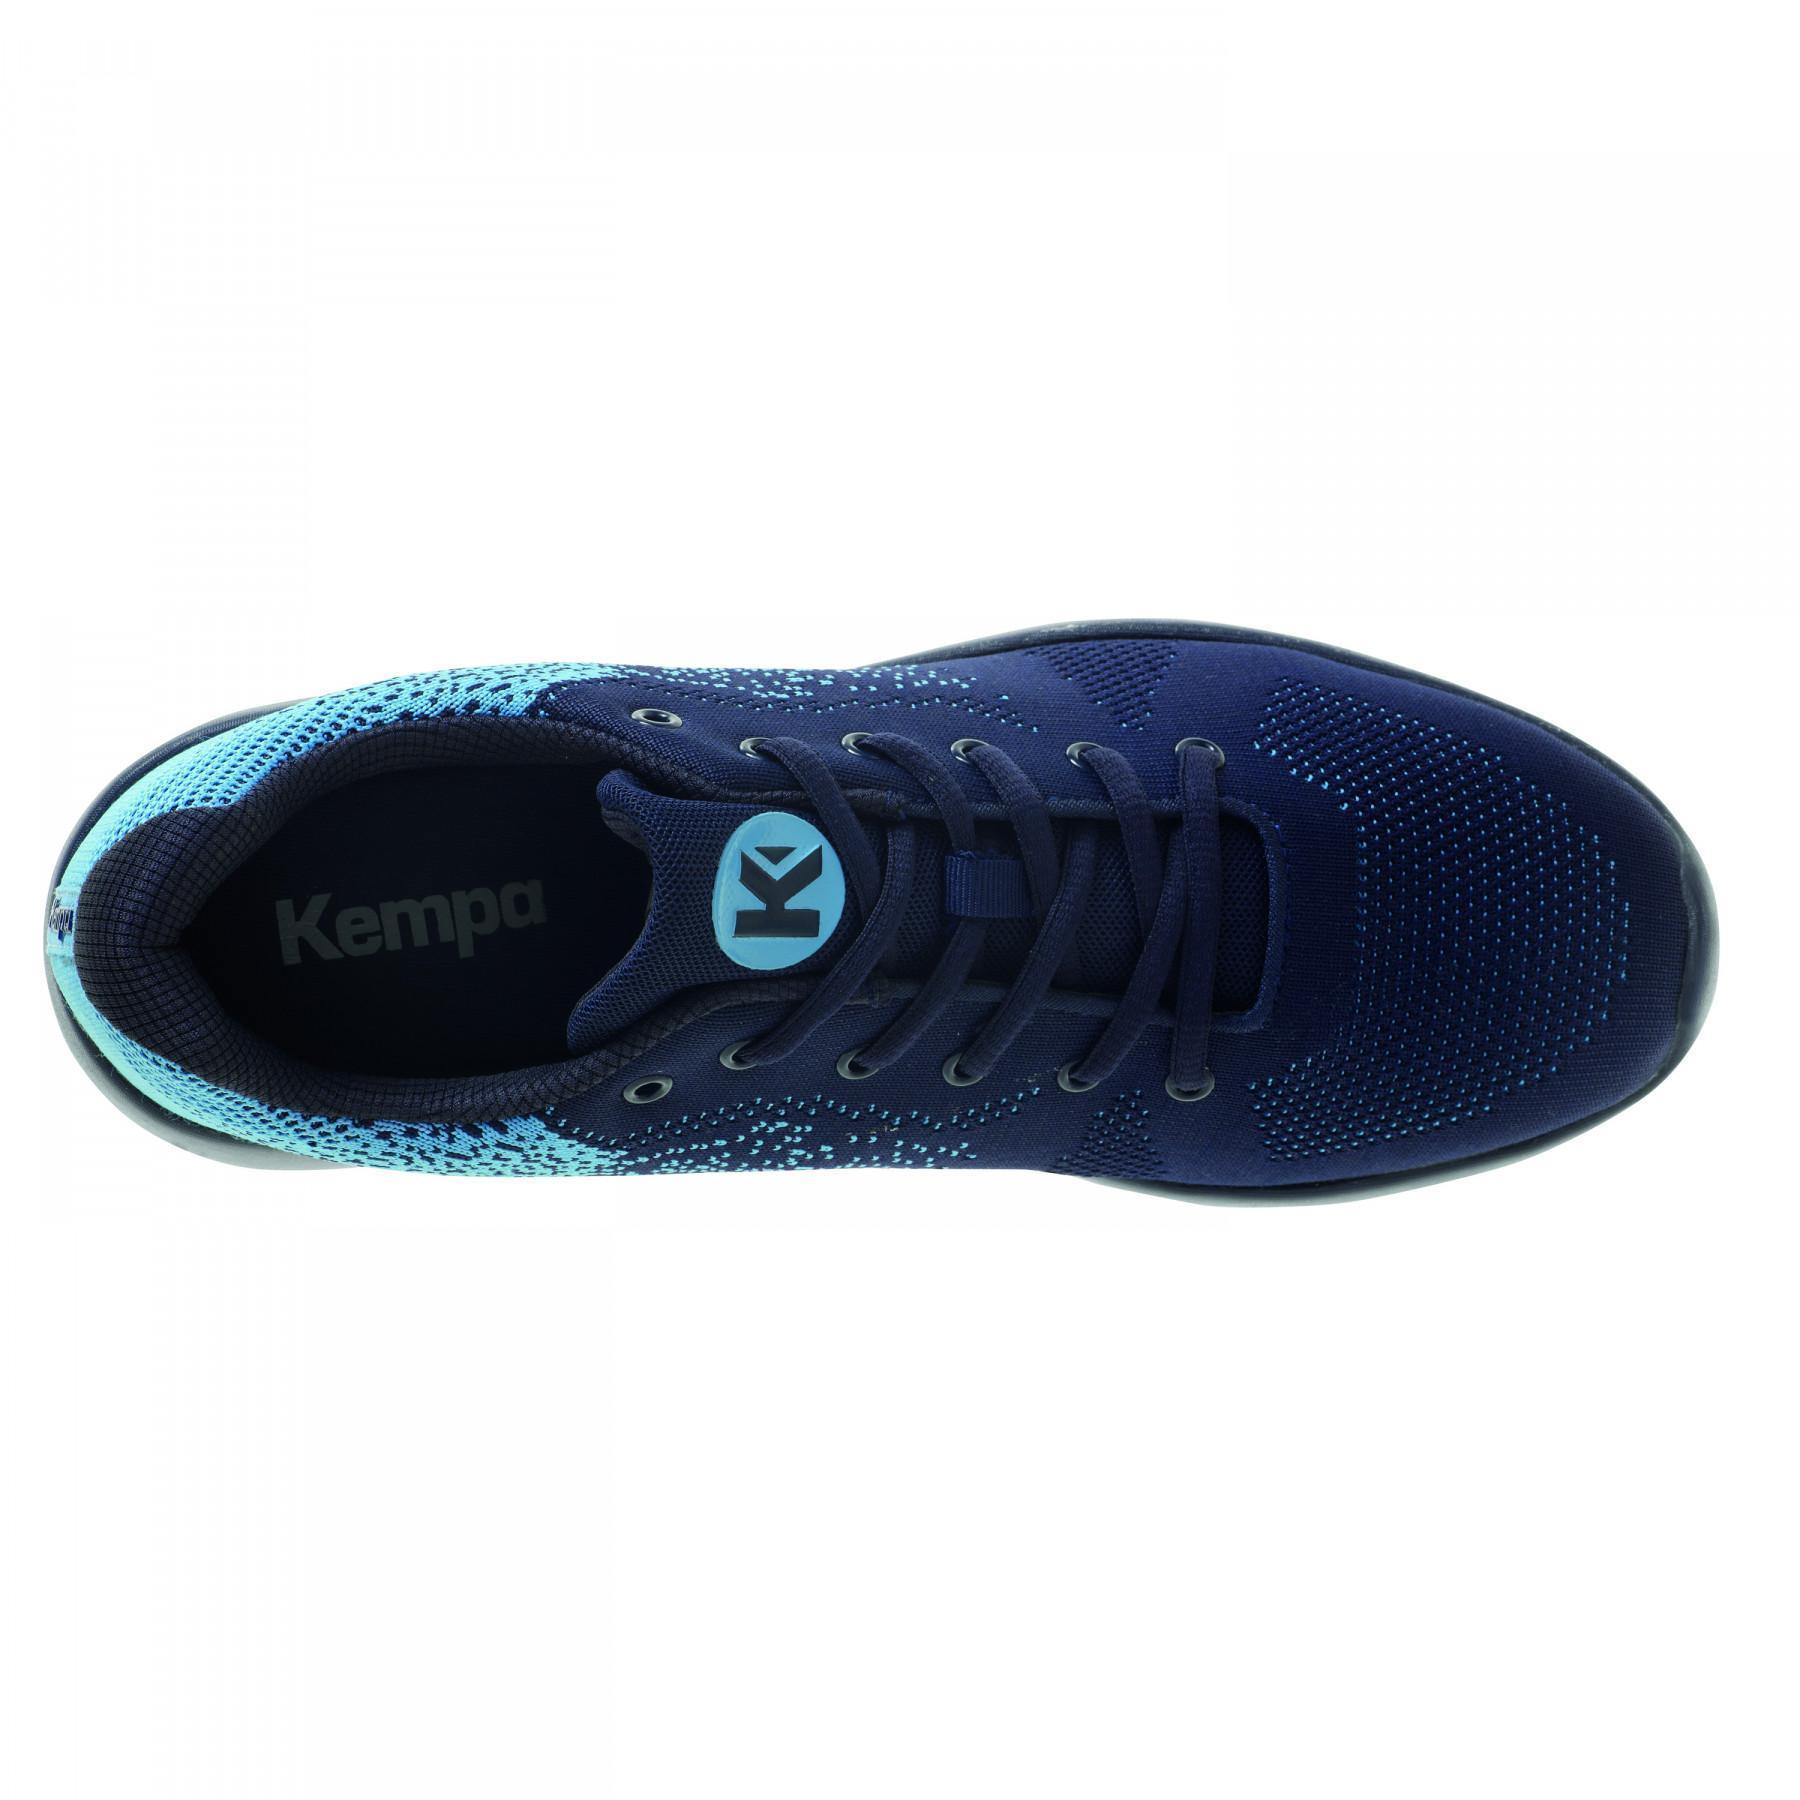 Zapatos Kempa K-Float